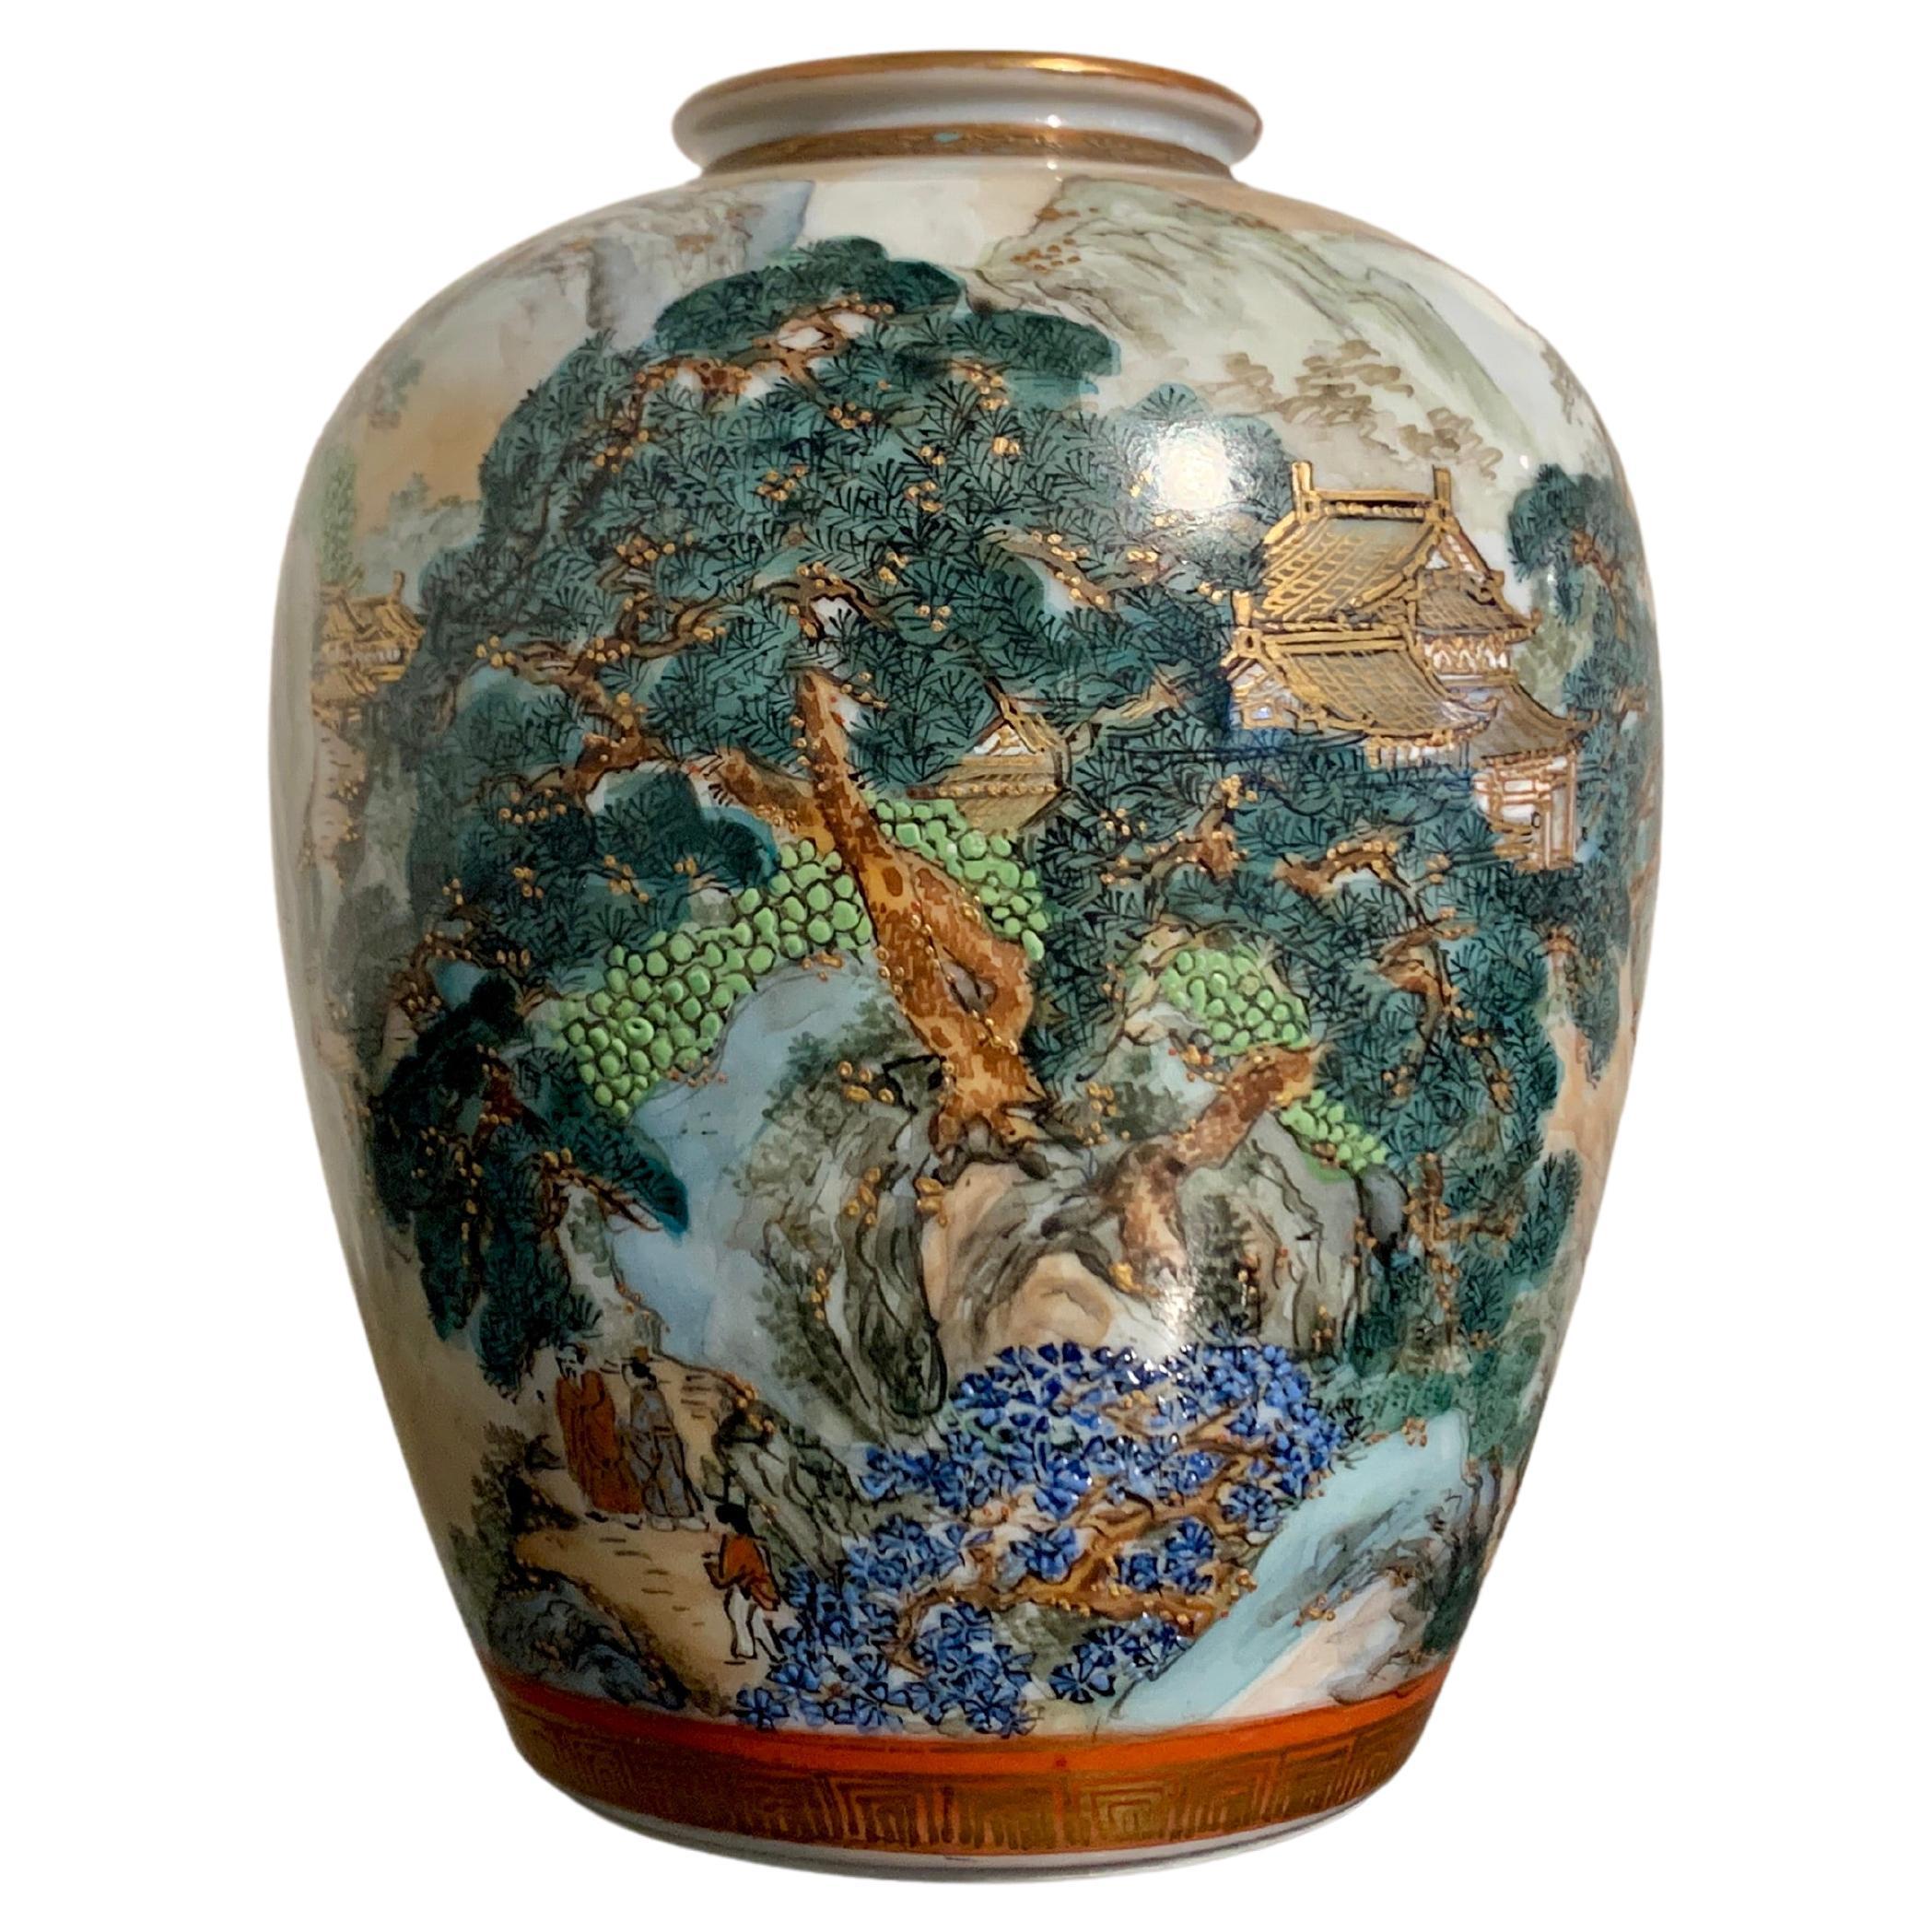 Eine raffinierte und gut bemalte Vase aus Kutani-Porzellan mit einer Landschaftsszene in den Bergen, Showa-Ära, um 1930, Japan.

Die elegante, eiförmige Vase aus feinem, durchscheinendem Porzellan ist über und über mit einer durchgehenden